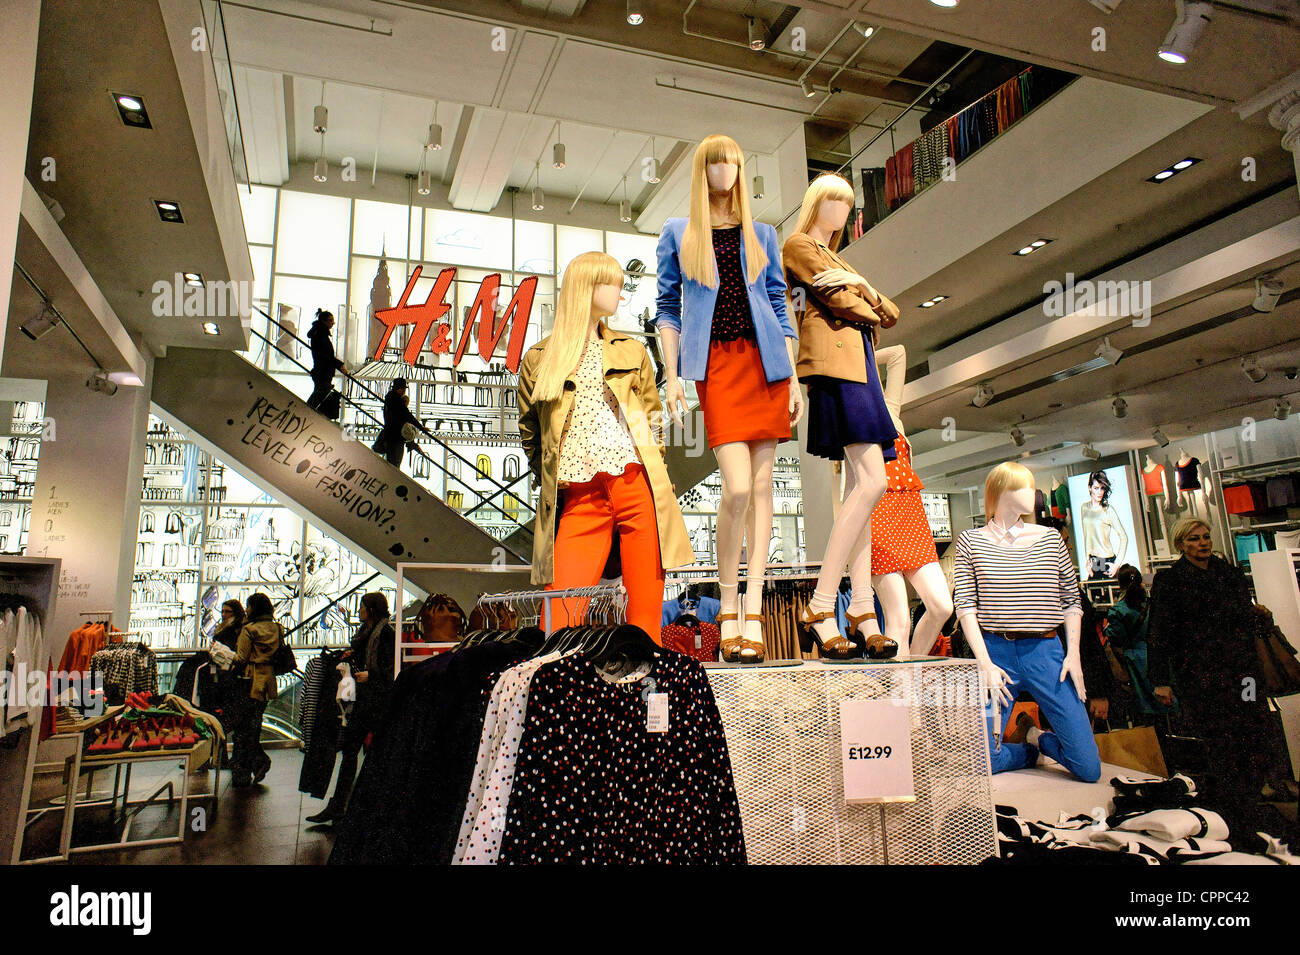 H & M di abbigliamento al dettaglio della catena svedese store. Womens ladies abbigliamento. Piano terra interni. No. 234 Regent Street, Londra, Regno Unito Foto Stock